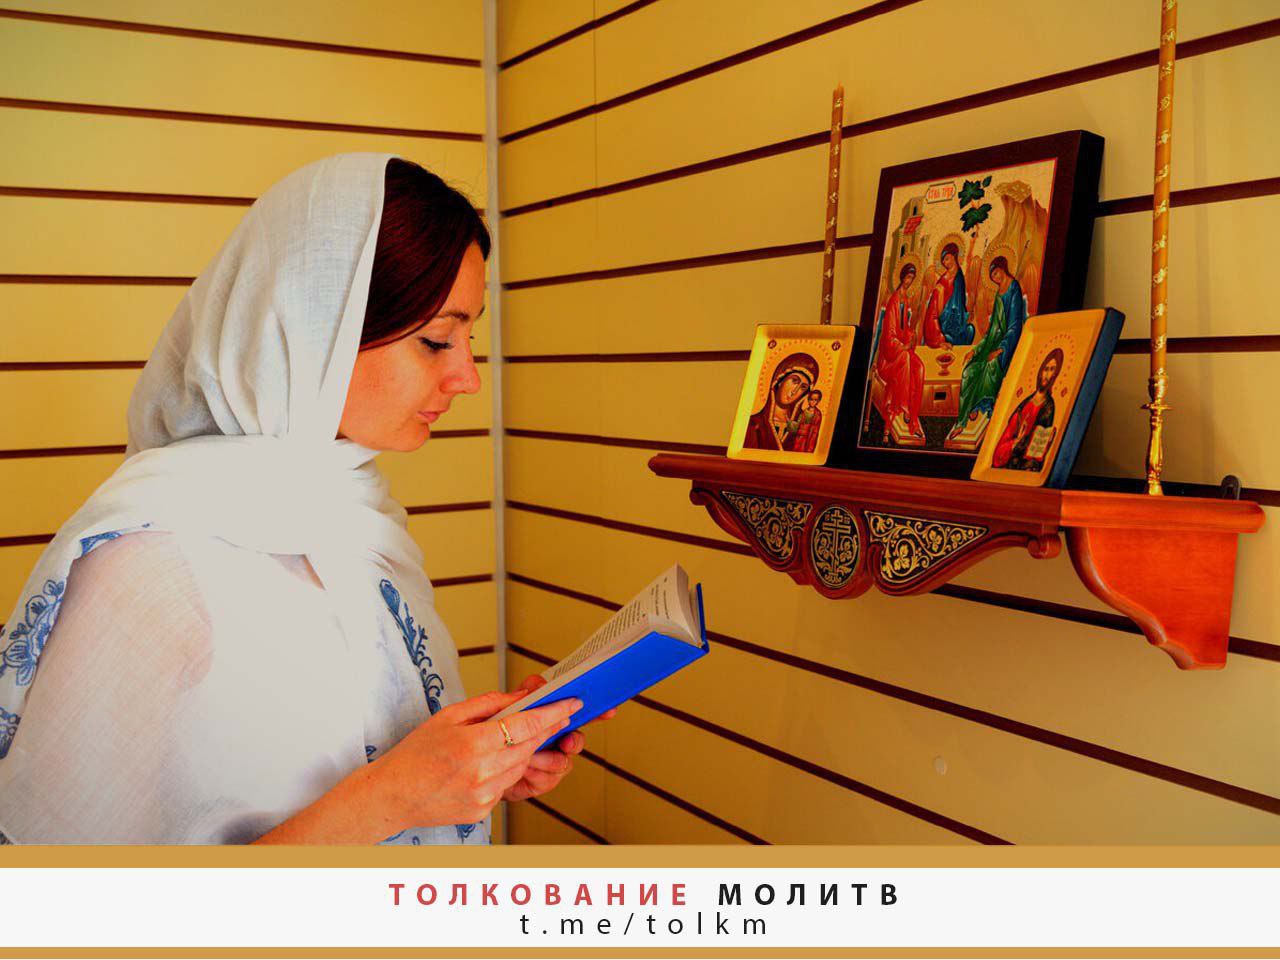 Молитва православной женщины. Православная женщина в храме. Девушка молится в церкви. Православный молитвенный дом. Православные люди.